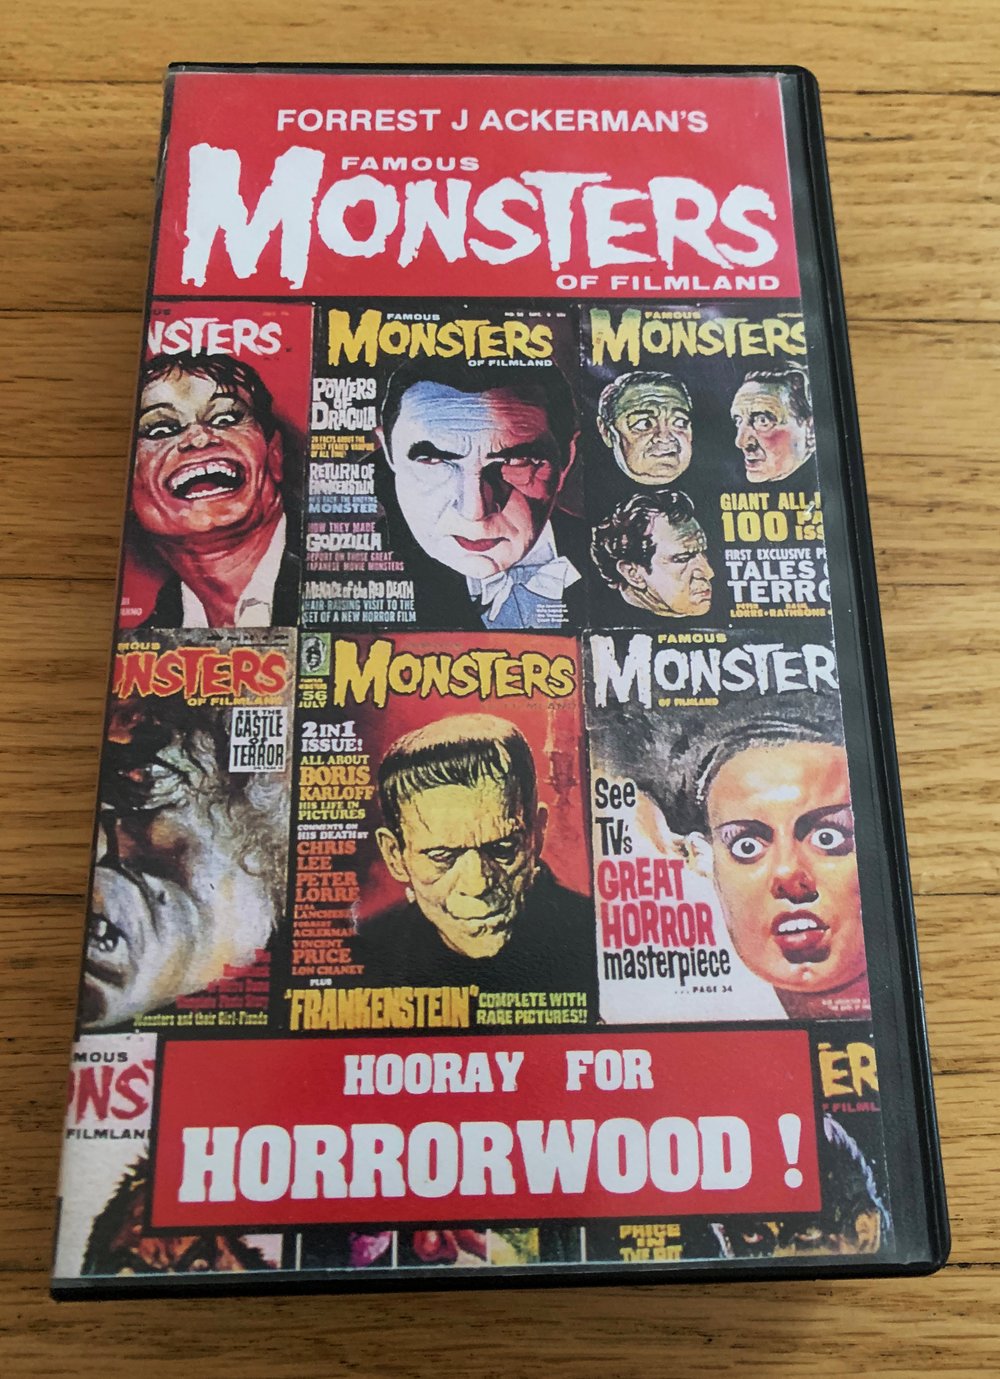 Forrest J. Ackerman's FAMOUS MONSTERS OF FILMLAND Hooray for Horrorwood! VHS